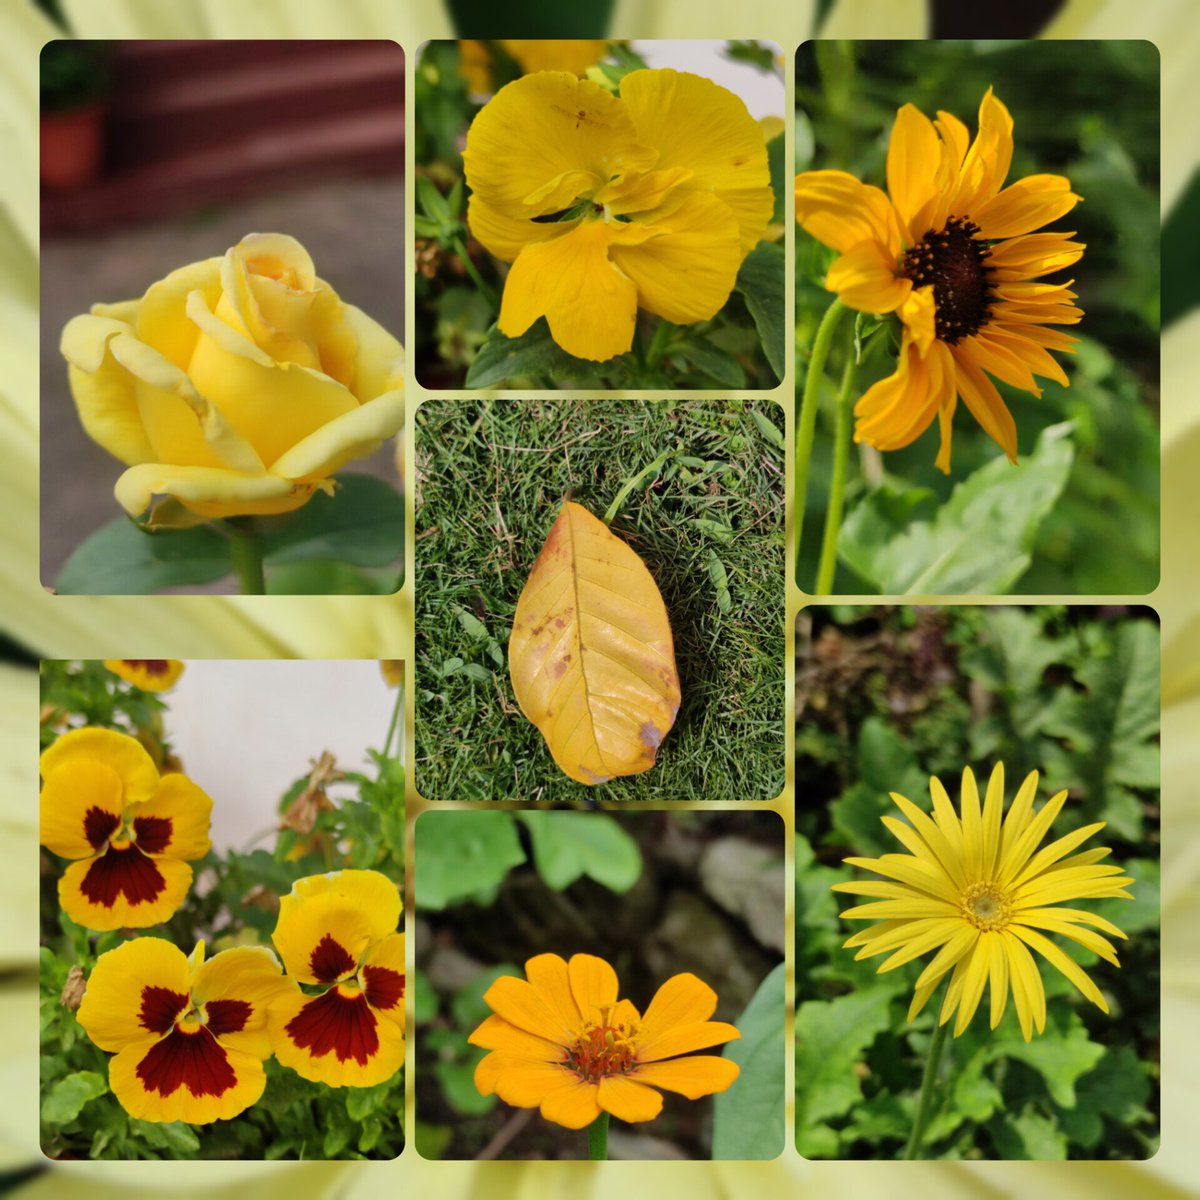 Cheerful yellows from #mygarden for #SundayYellow @DavidMariposa1 #nature #NatureLover #NaturePhotography #TwitterNatureCommunity #GardeningTwitter